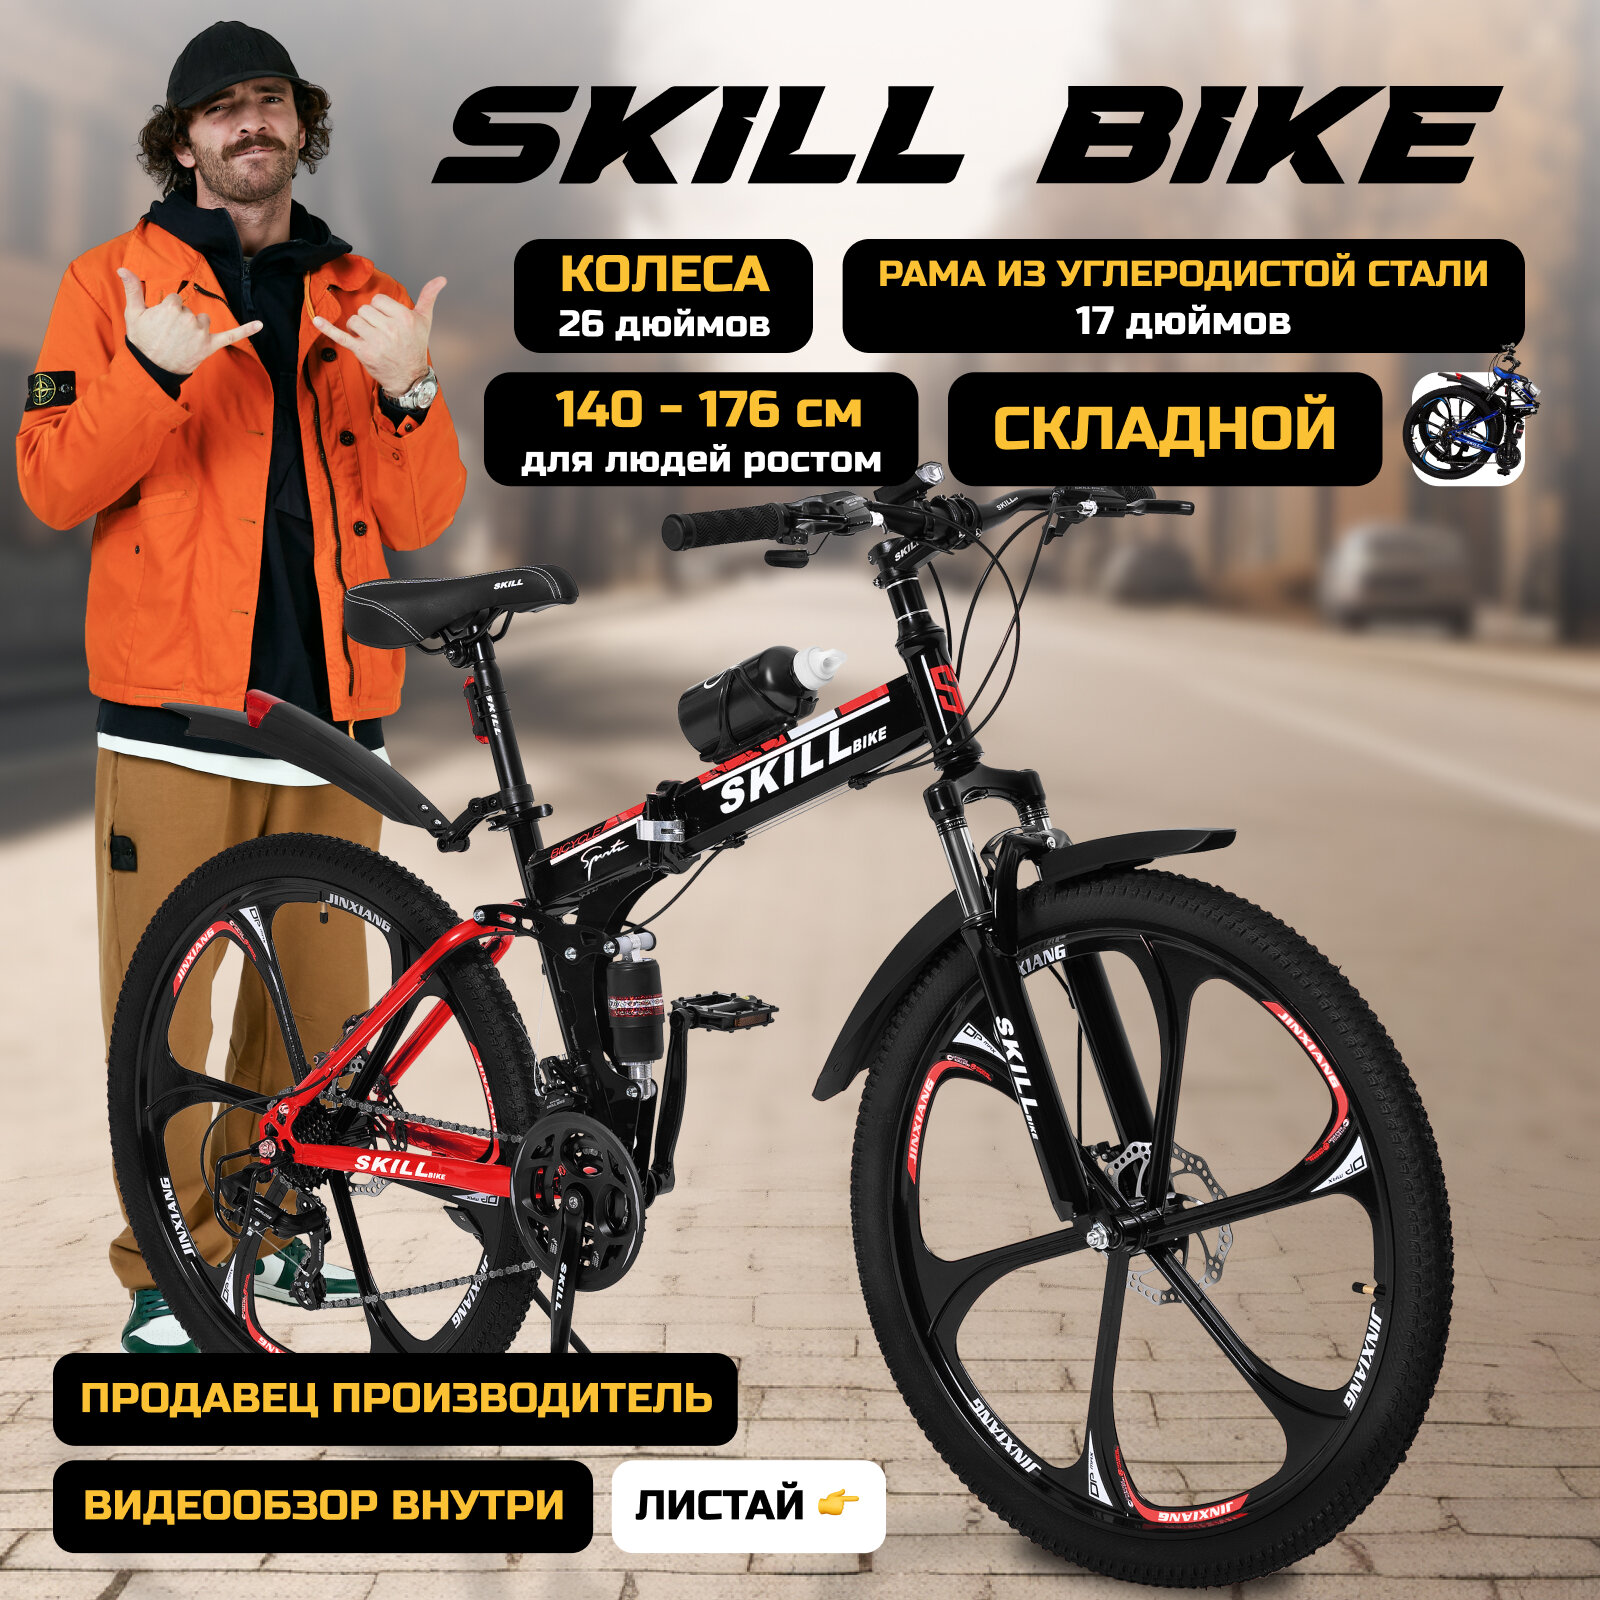 Велосипед складной Skill Bike, рама 17 дюймов, 26 дюймов колеса, 24 скорости